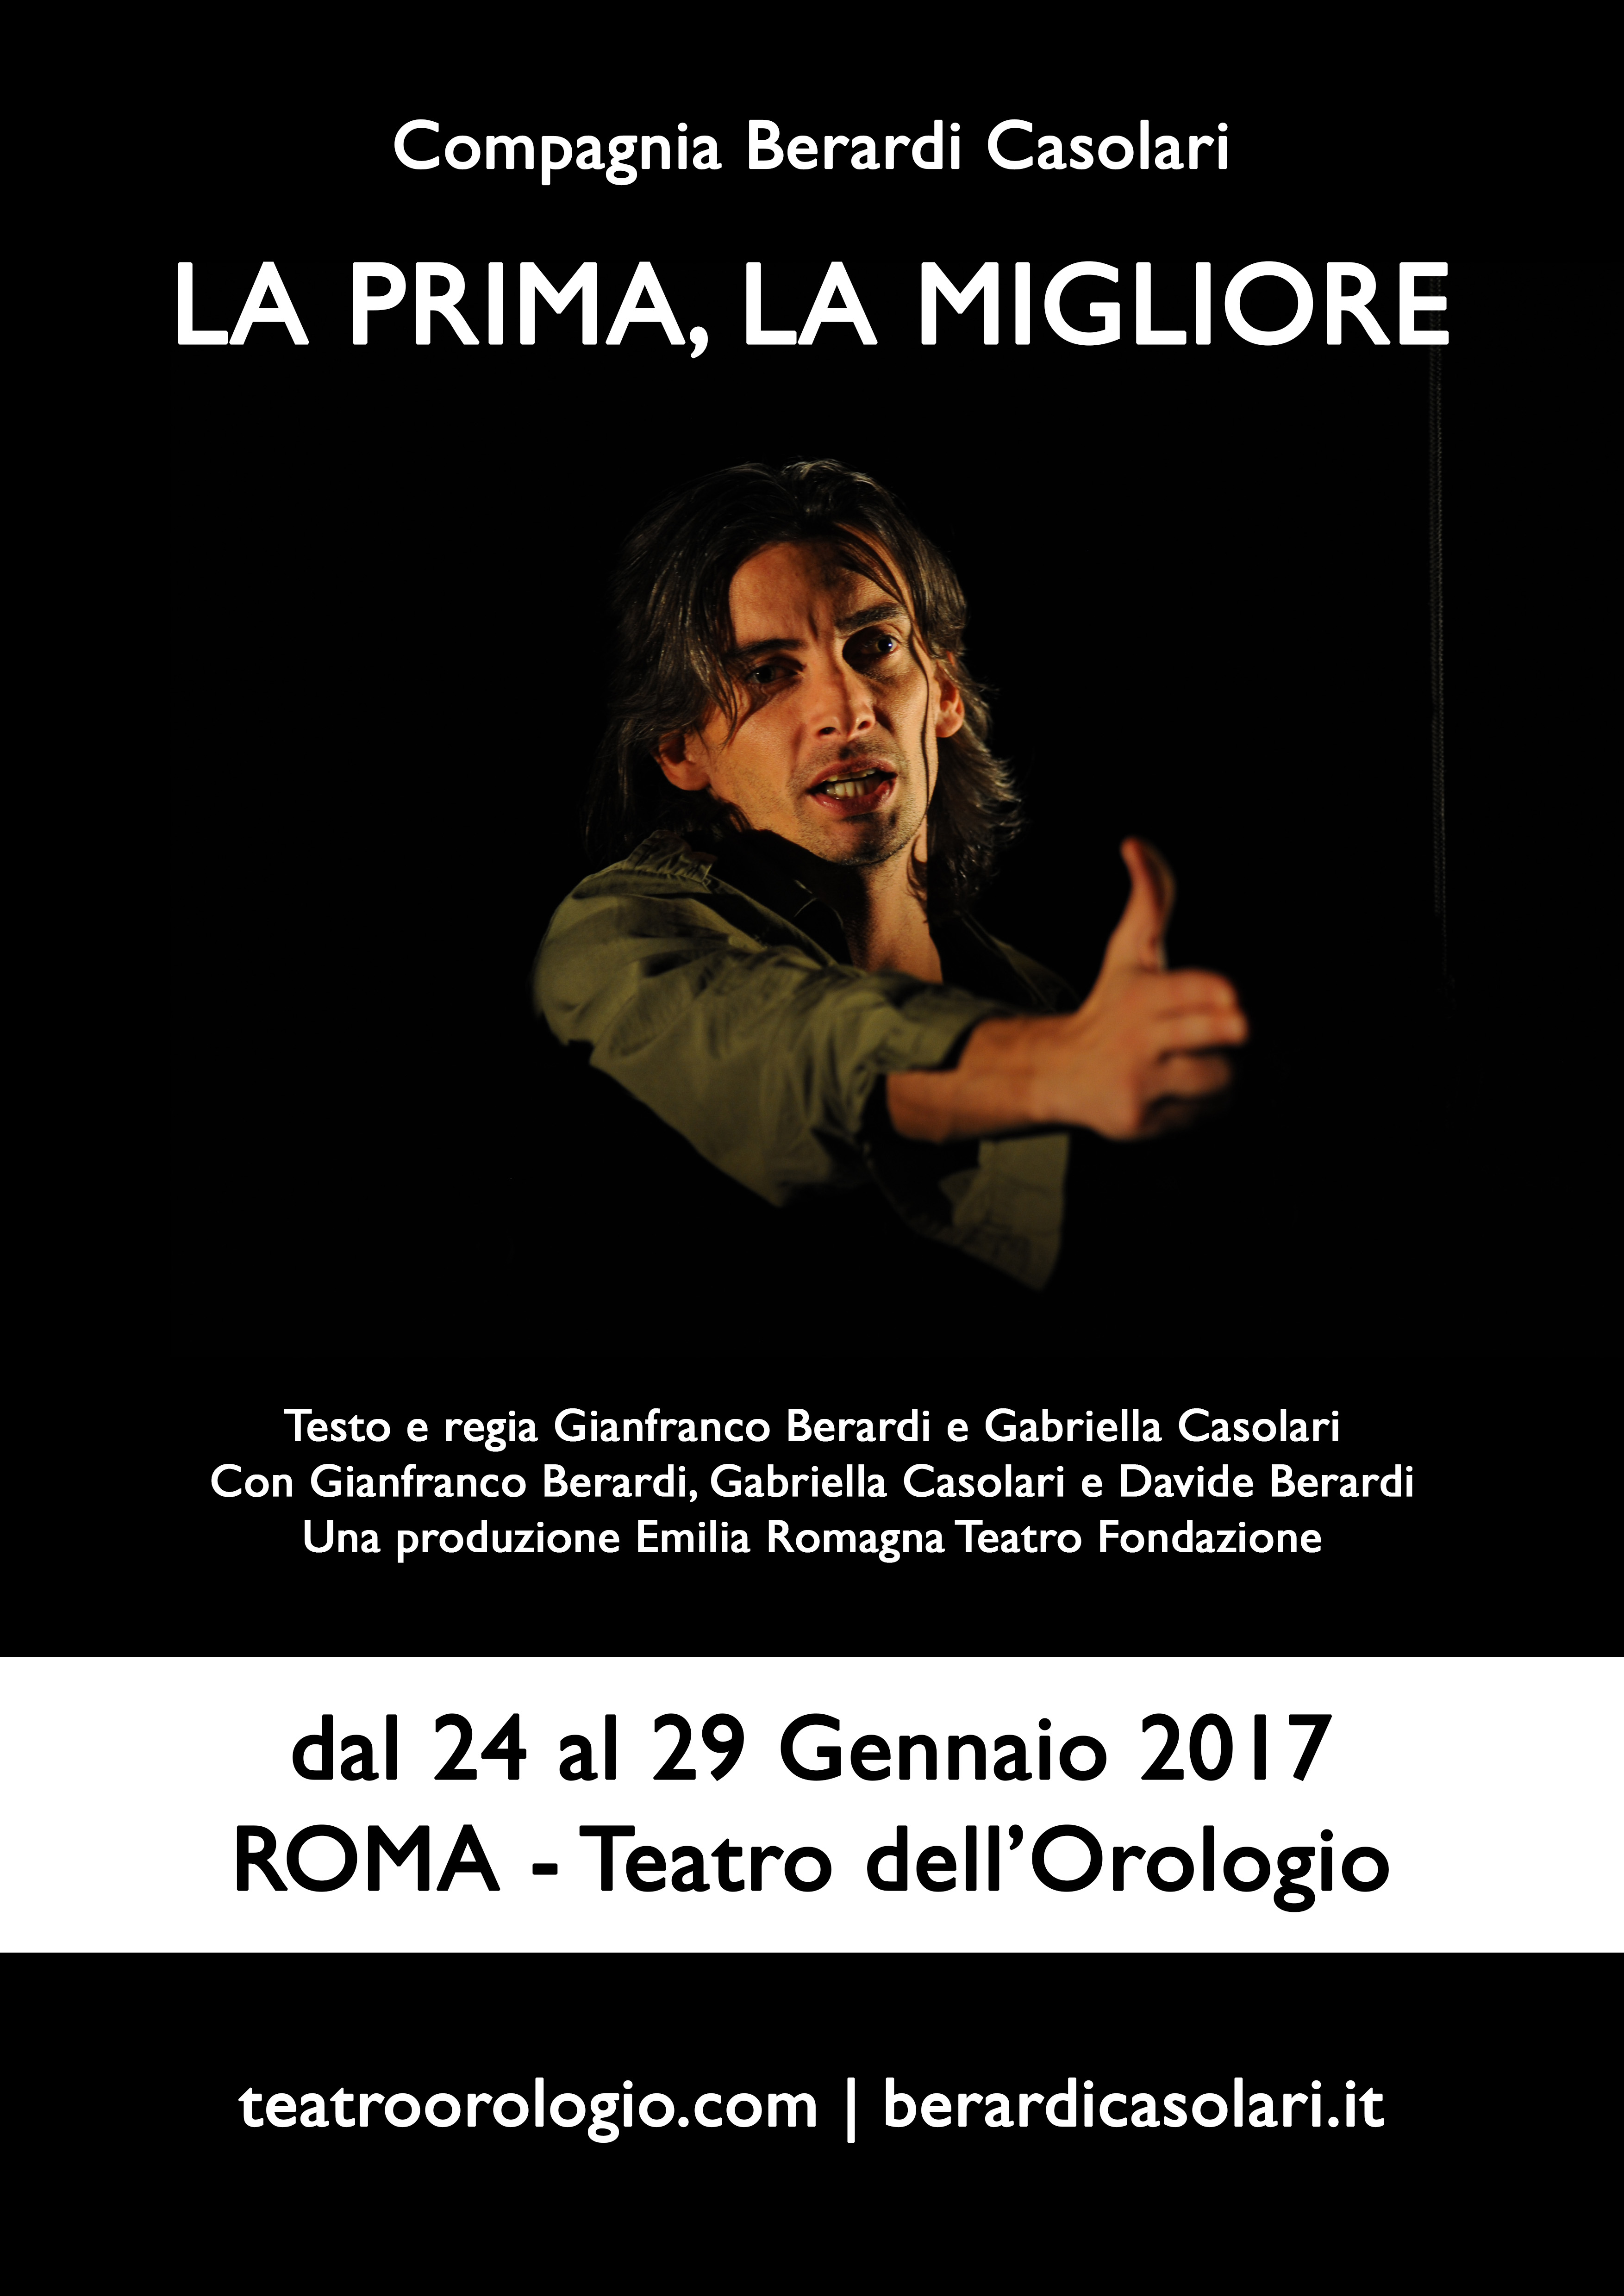 Roma, La prima, la migliore al teatro dell'orologio dal 24 al 29 gennaio 2017